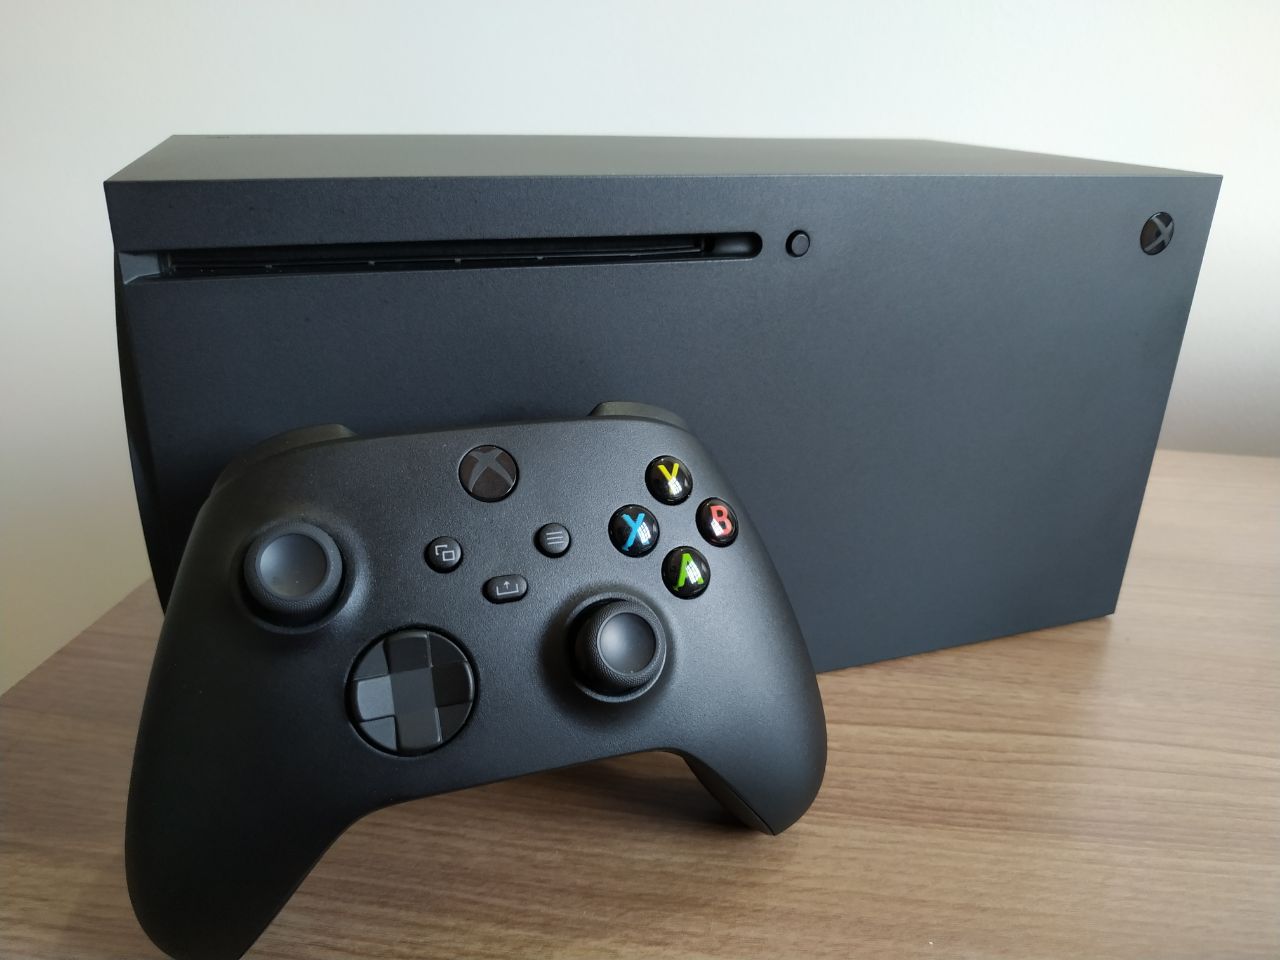 Novas atualizações do console incluirá compra de jogos do Xbox 360 no Xbox  One, e mais! - Xbox Power